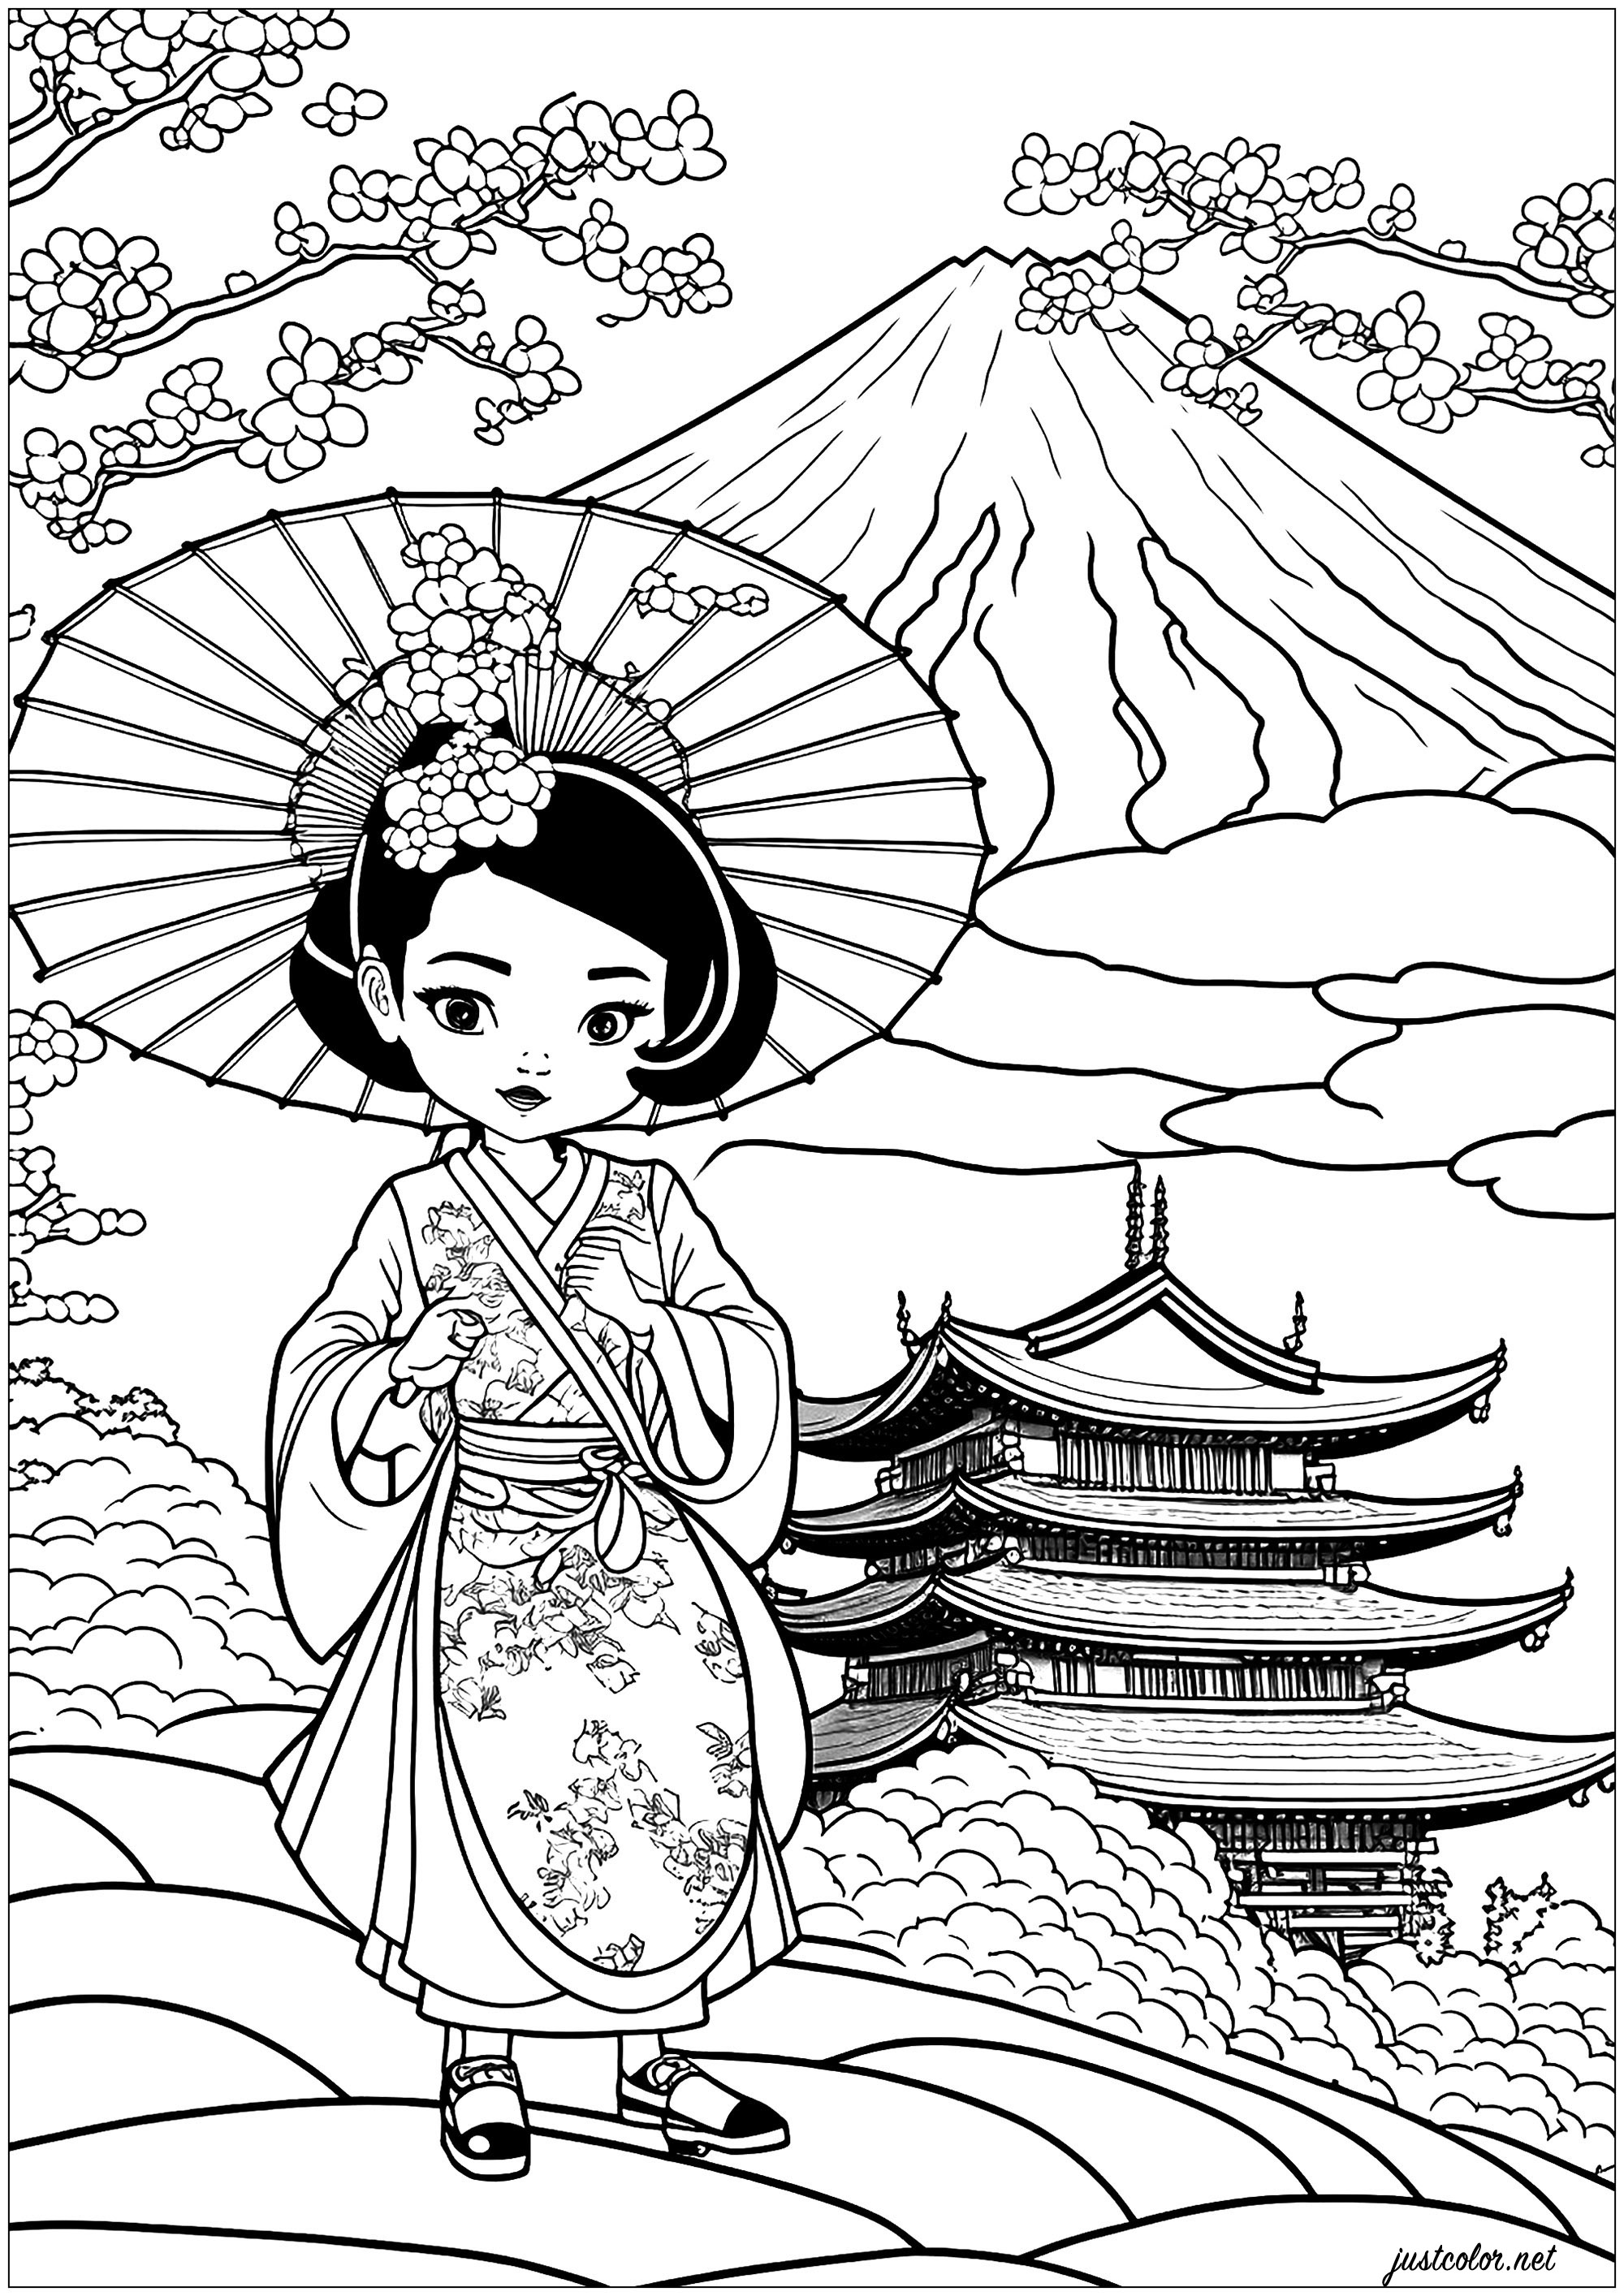 Cartone animato Geisha da colorare. Una complessa pagina da colorare con una bella geisha nel suo splendido kimono e un magnifico paesaggio giapponese.